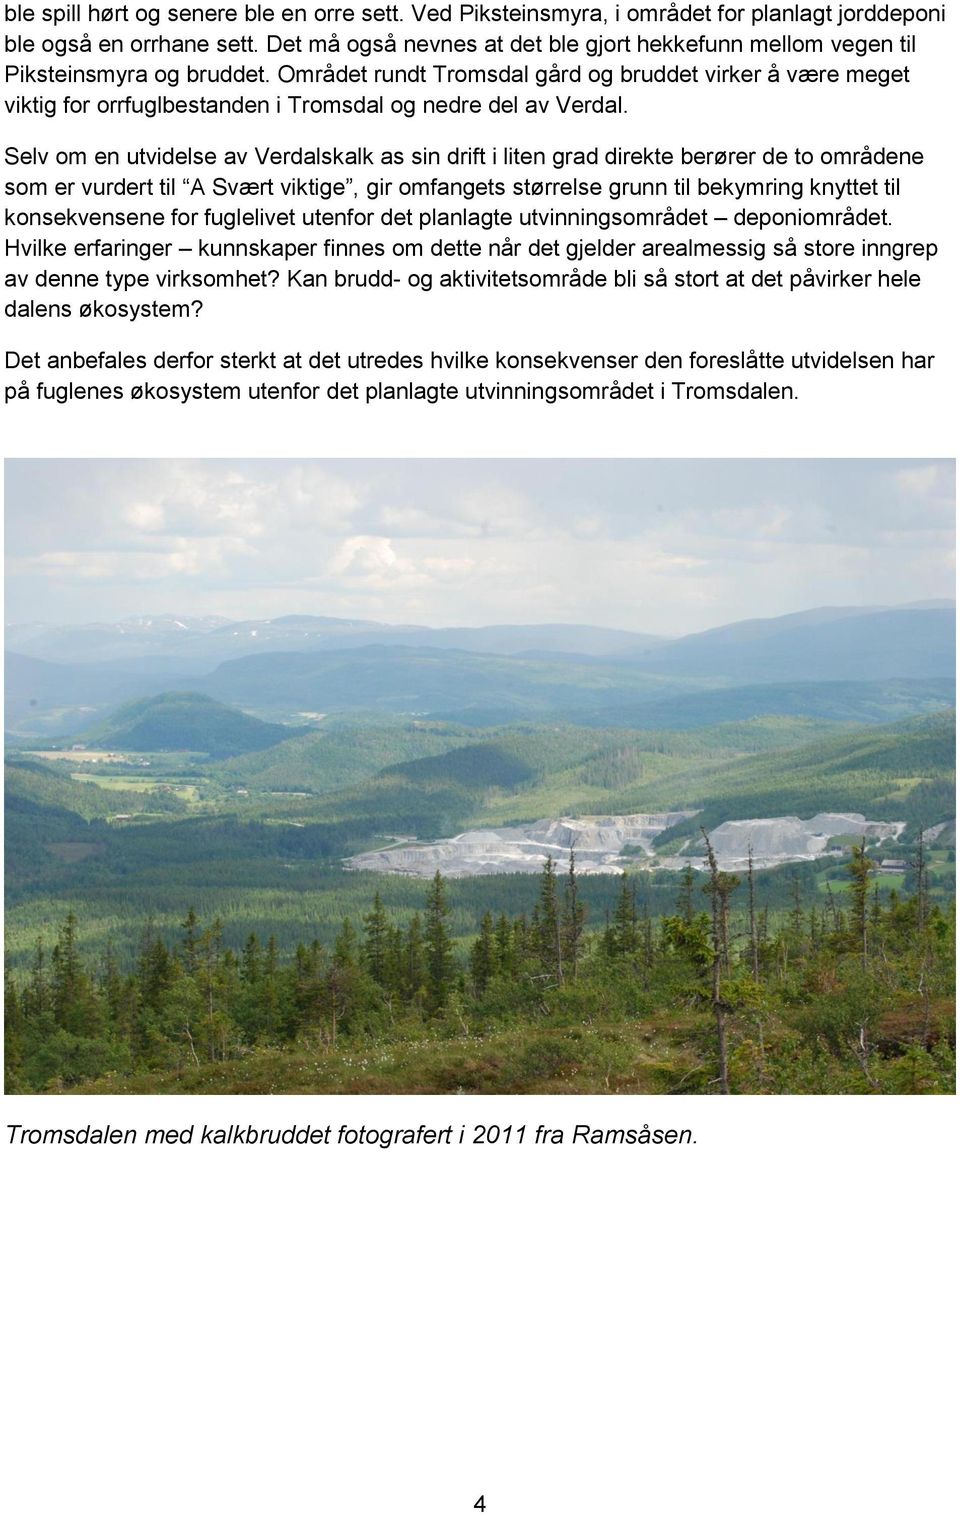 Området rundt Tromsdal gård og bruddet virker å være meget viktig for orrfuglbestanden i Tromsdal og nedre del av Verdal.